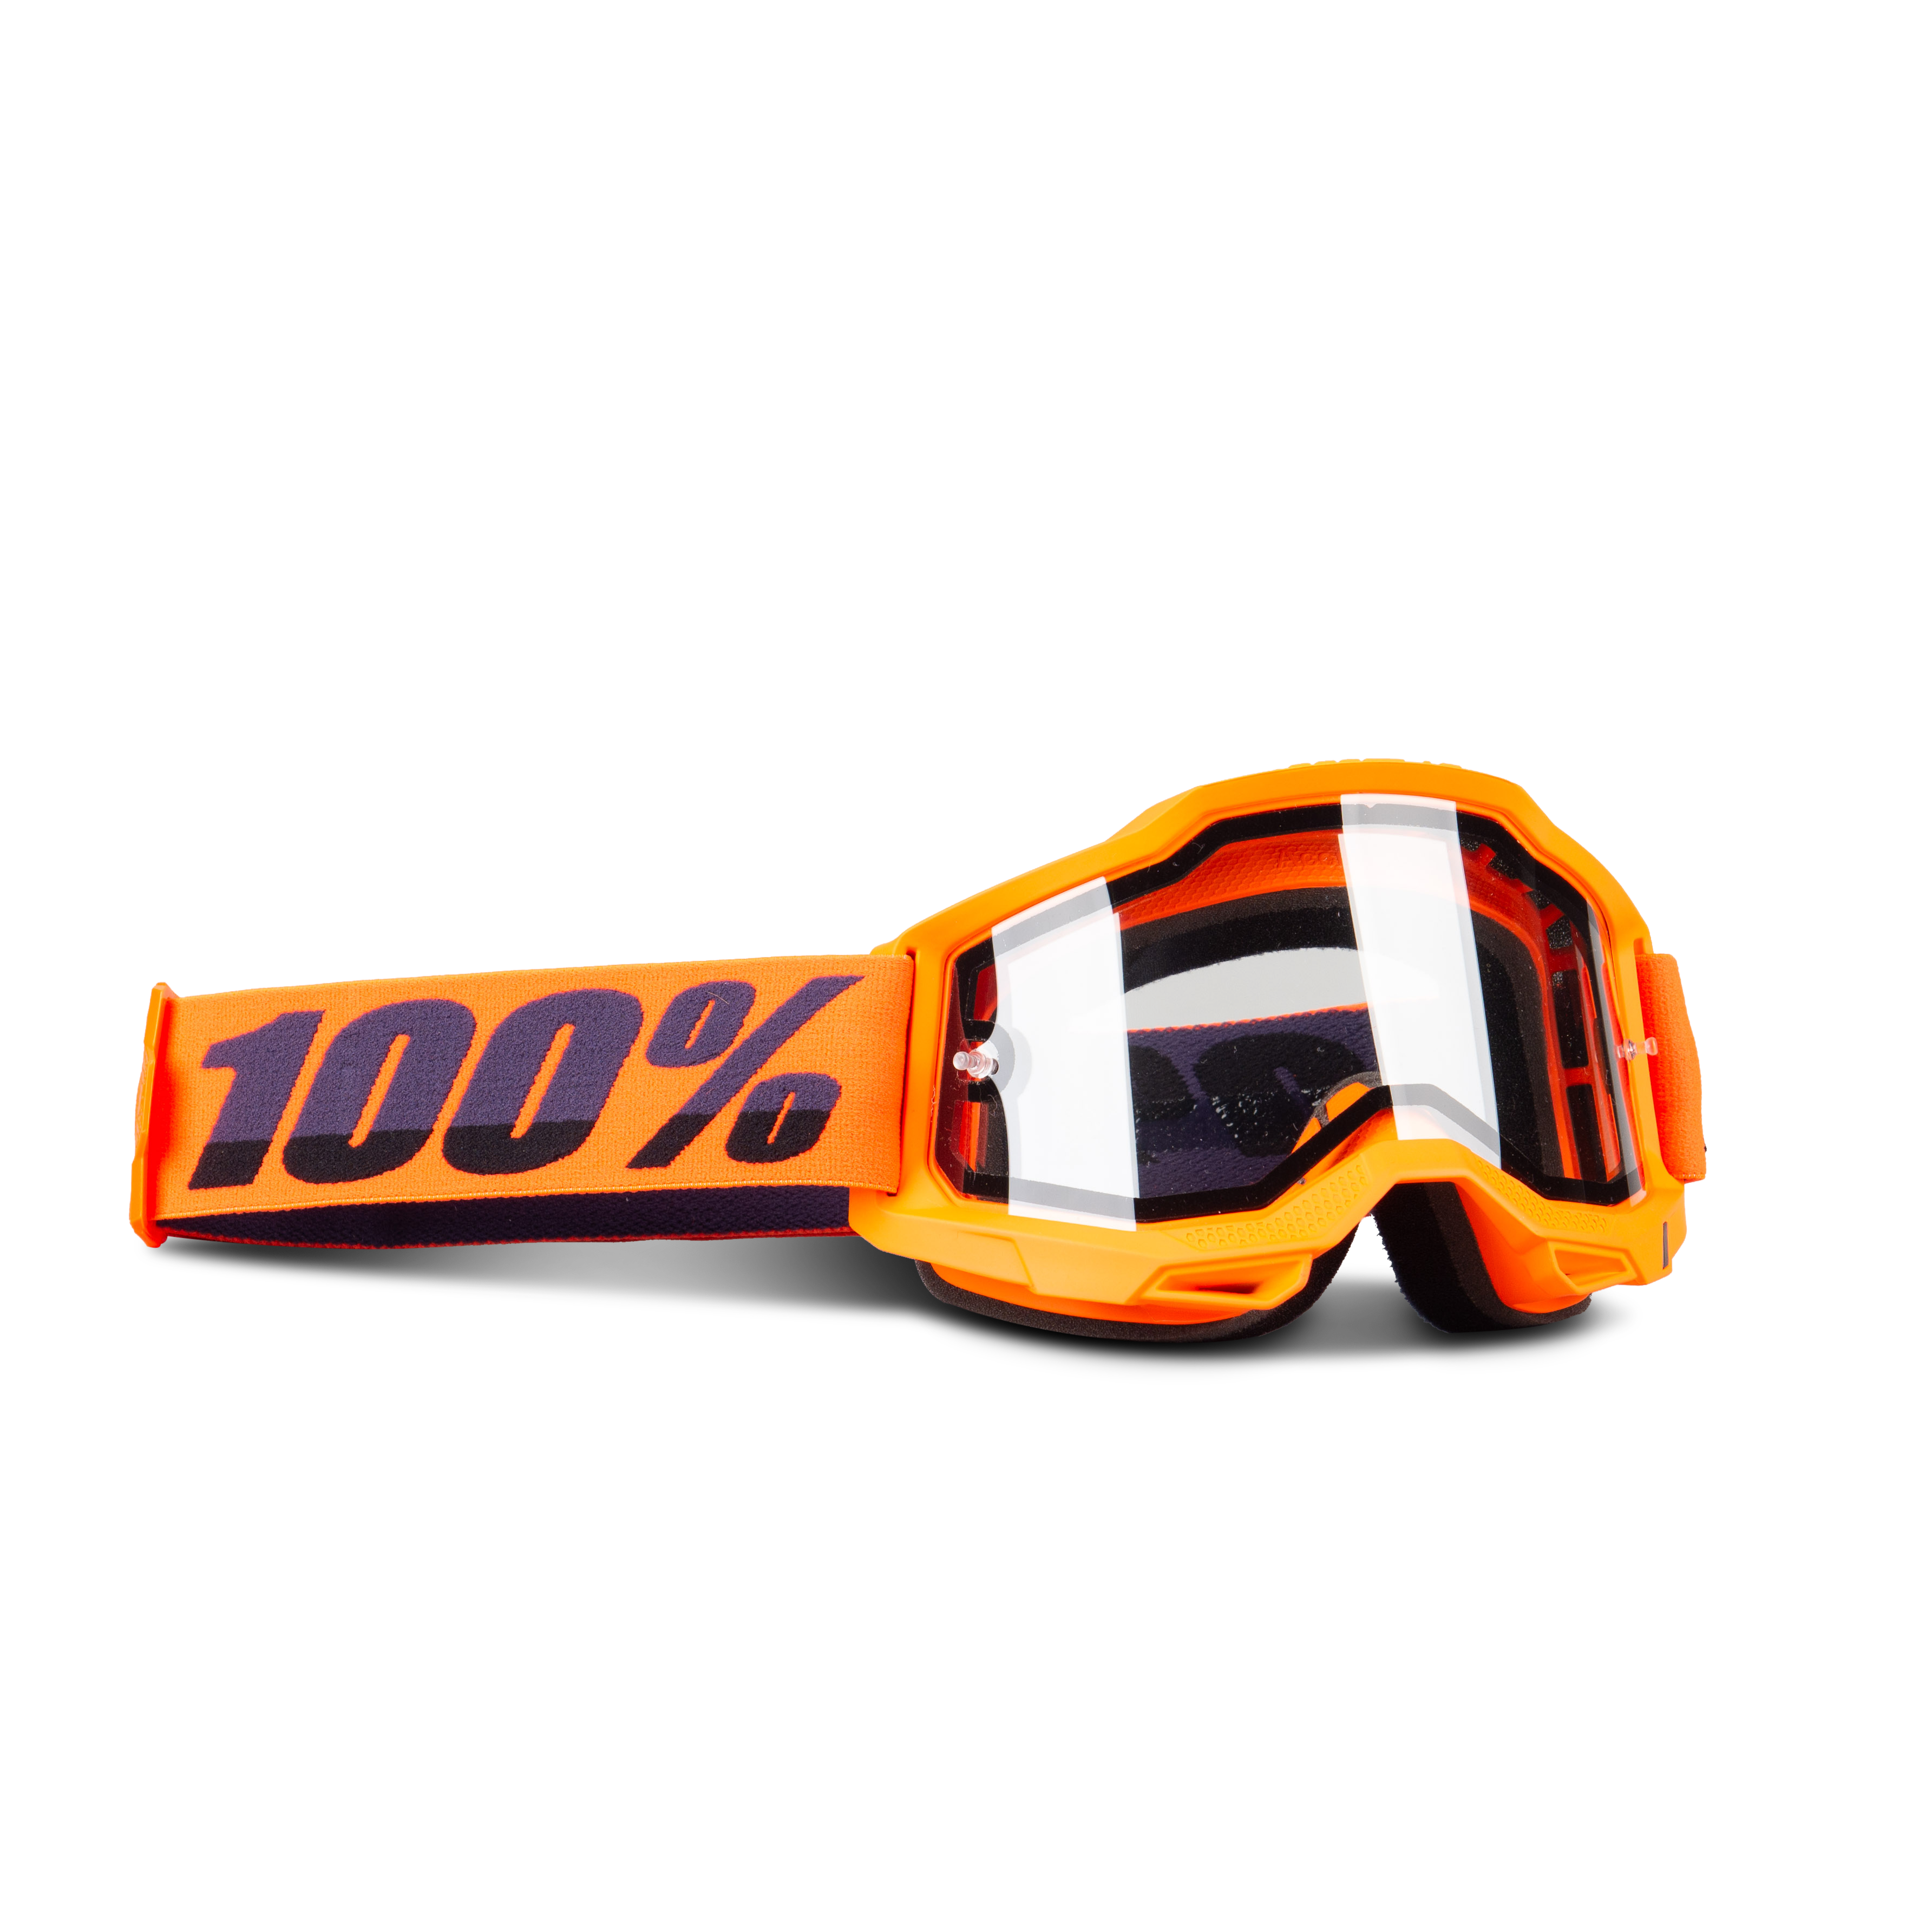 Maschera Cross 100% Accuri 2 Enduro Moto Nera - Adesso 15% di risparmio